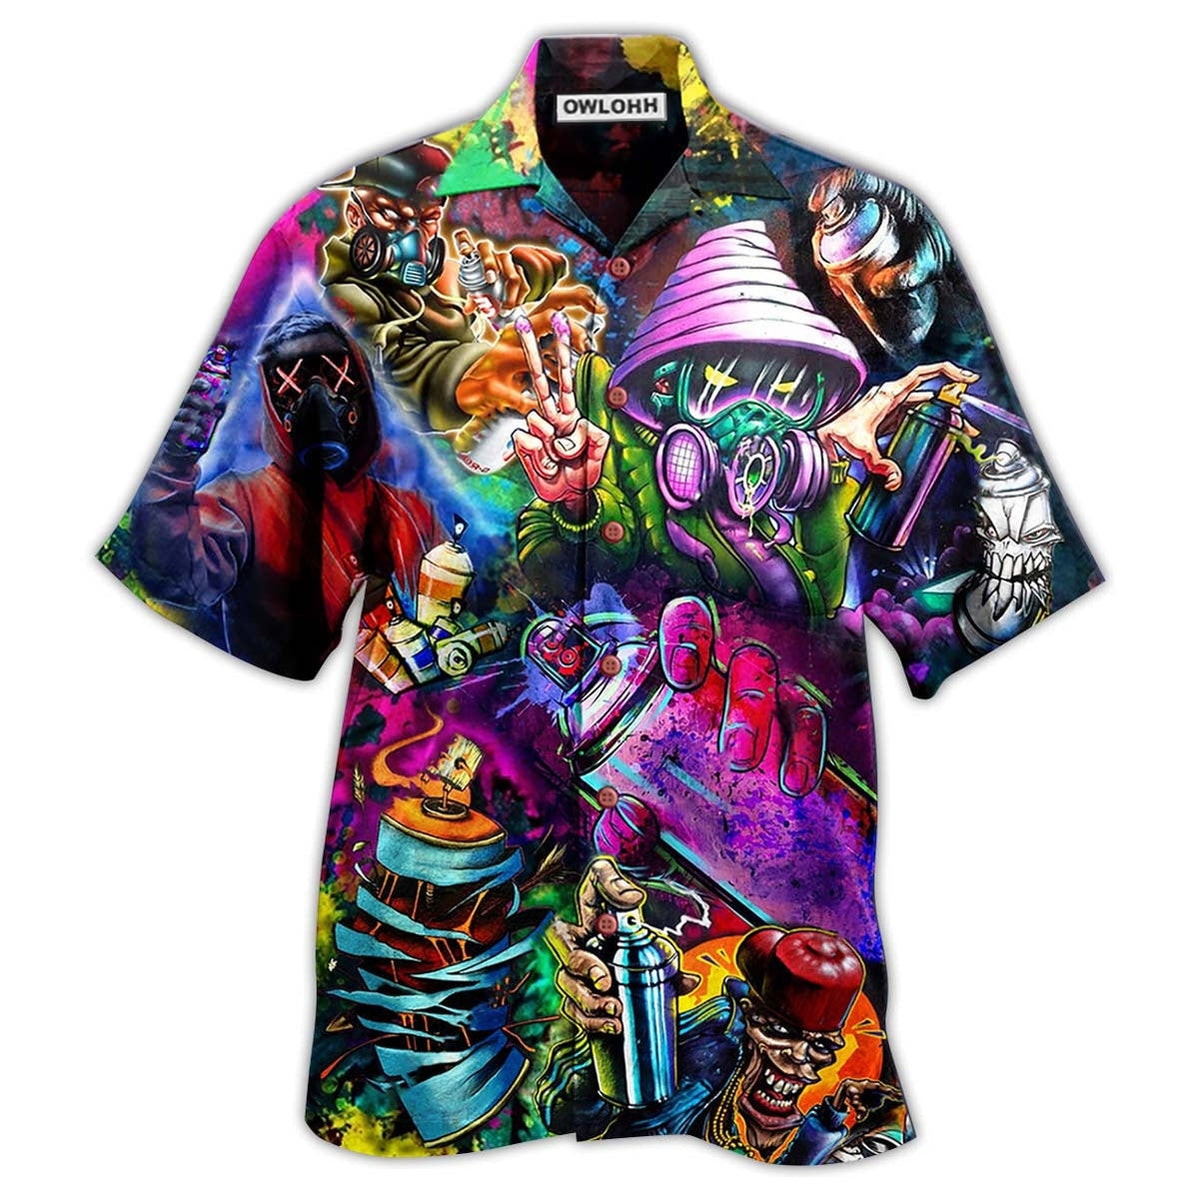 Hawaiian Shirt / Adults / S Hippie Say Hi Mysterious - Hawaiian Shirt - Owls Matrix LTD